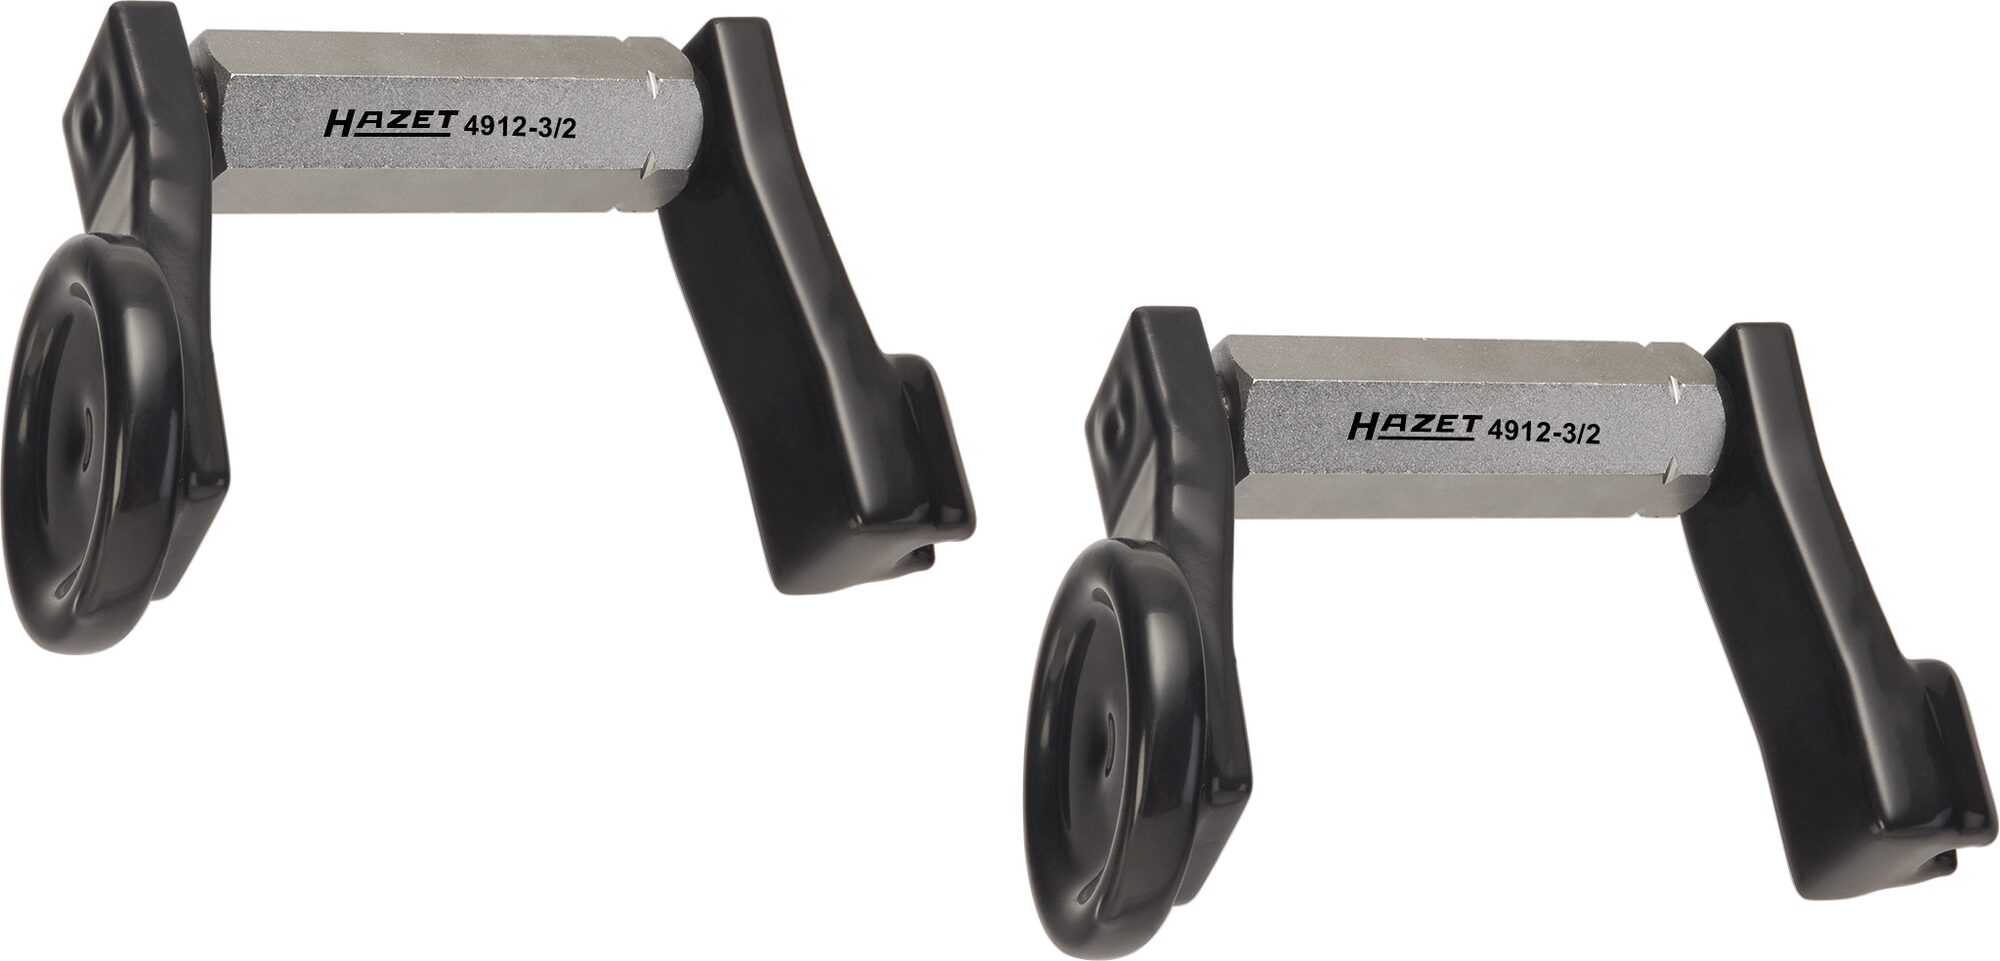 HAZET Sturz Einstell Werkzeug Satz 4912-3/2 · Anzahl Werkzeuge: 2